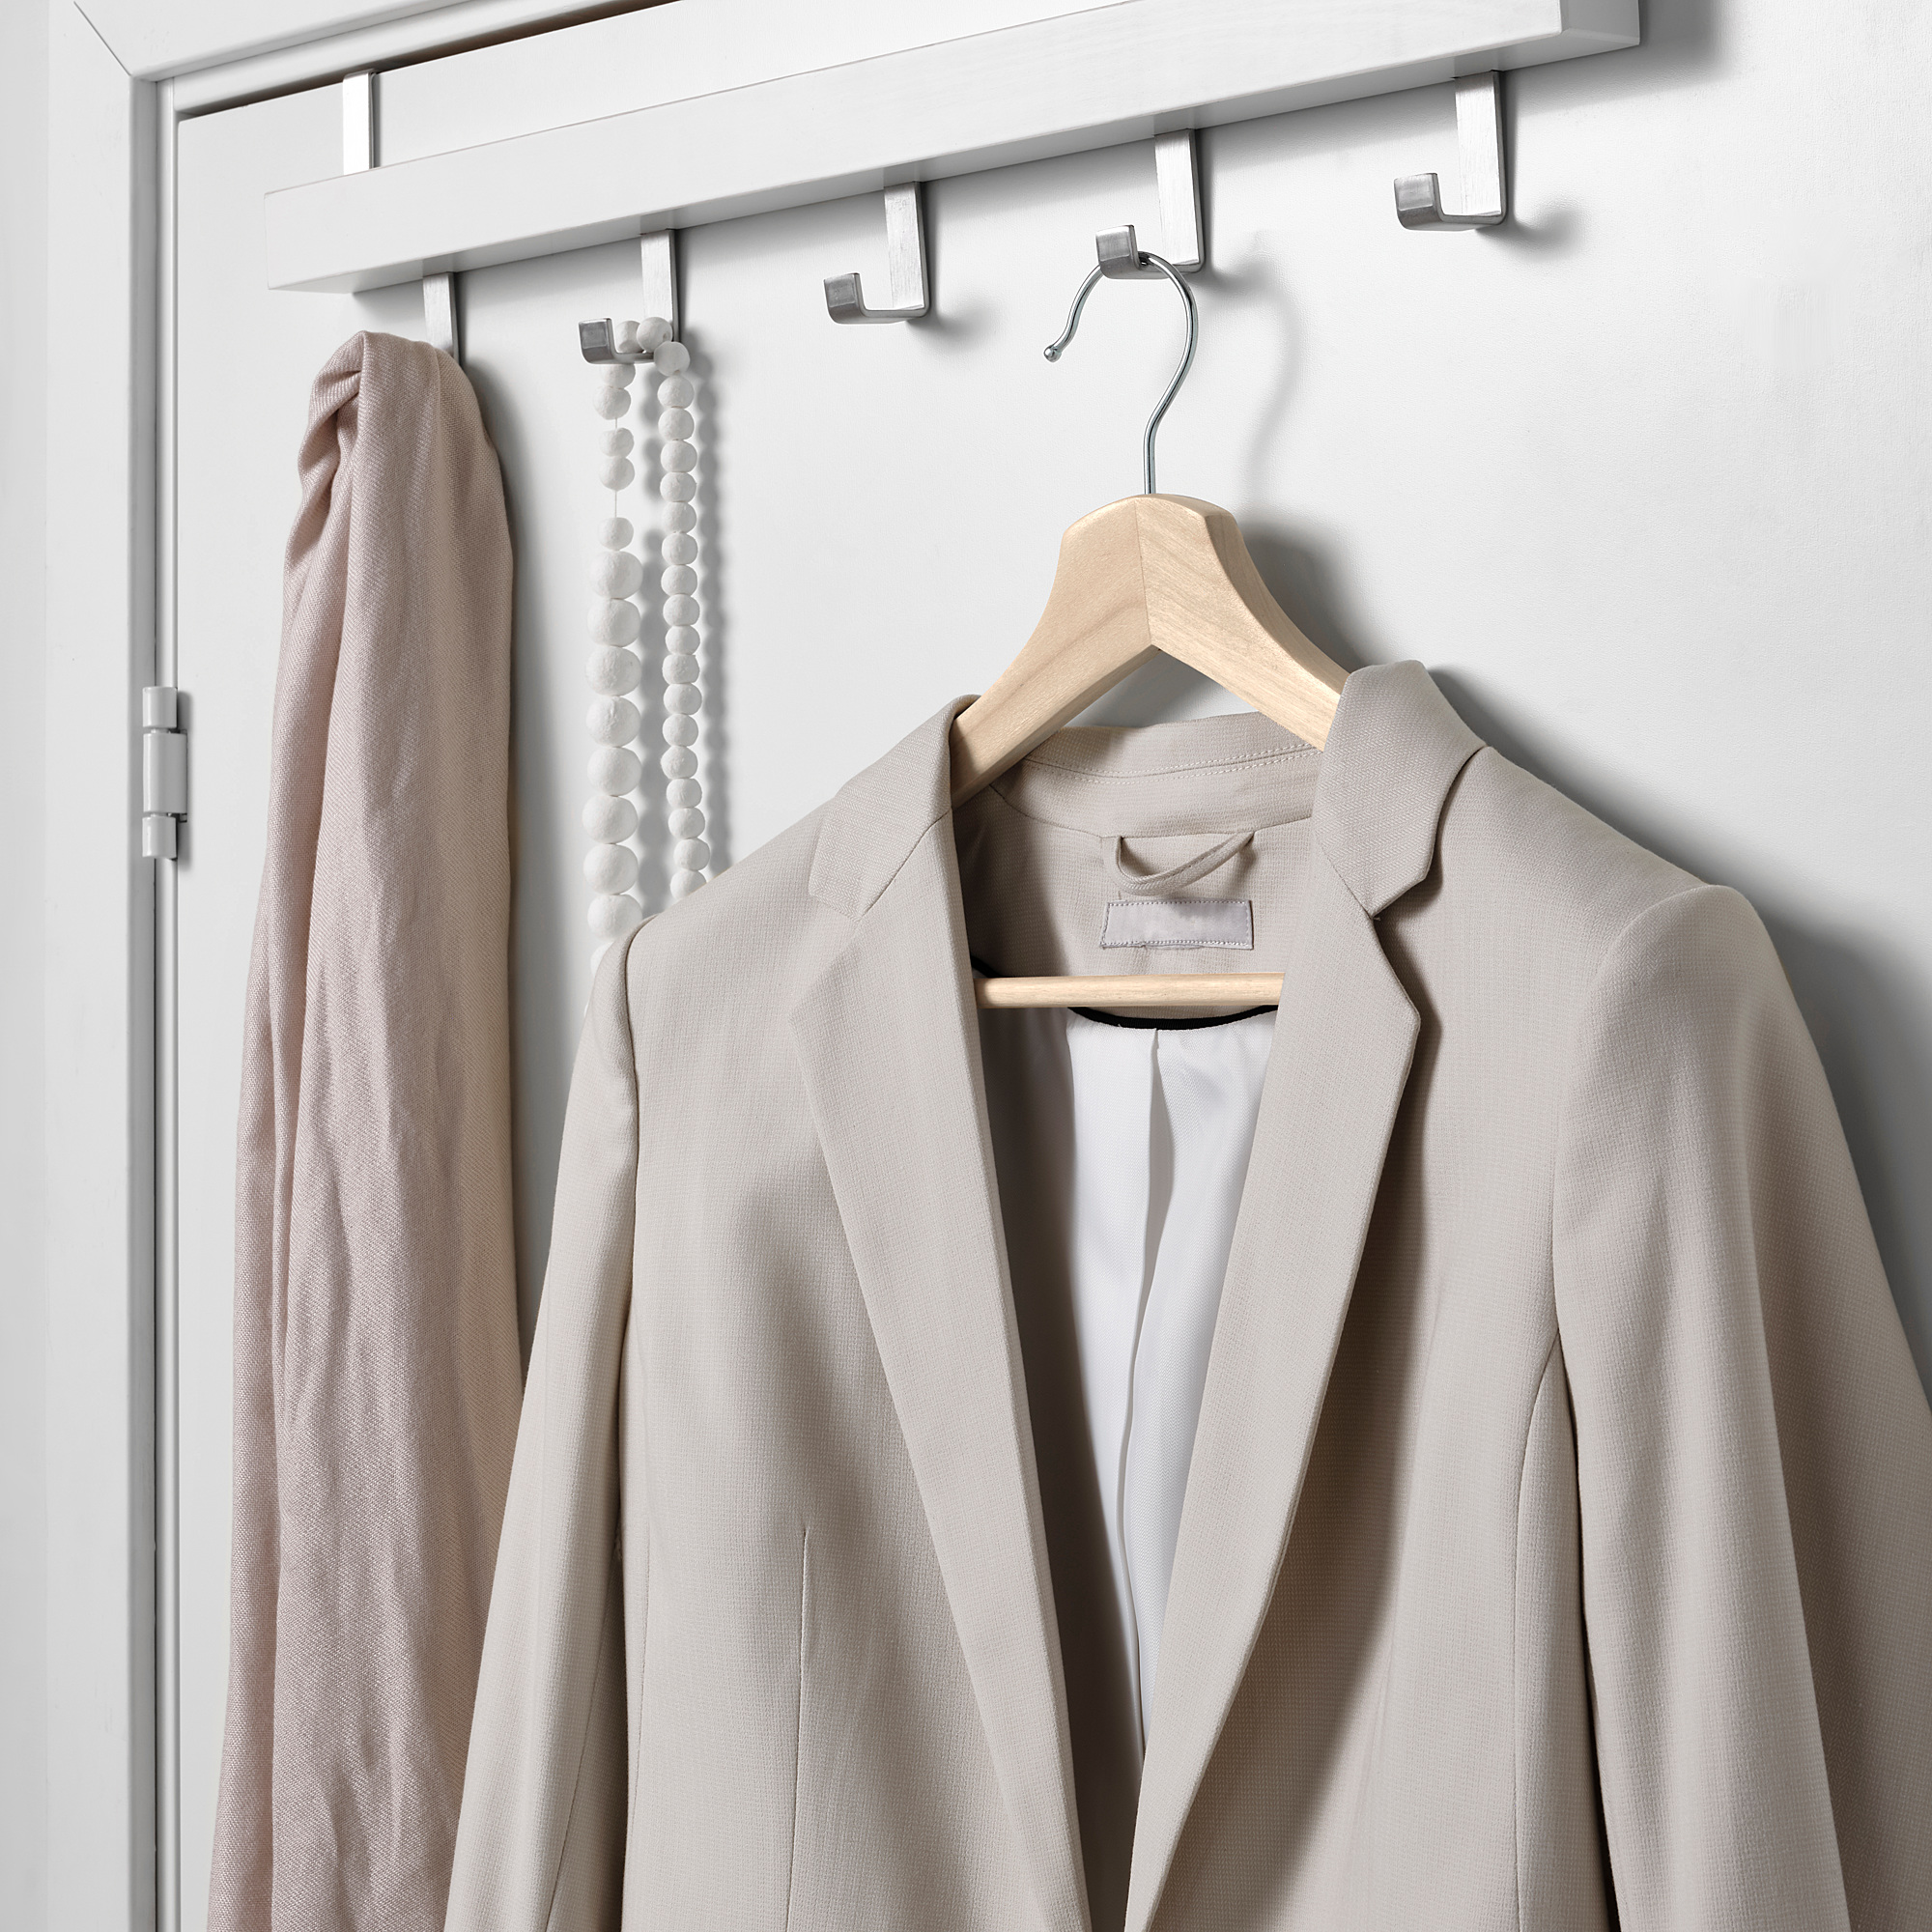 BUMERANG coat-hanger